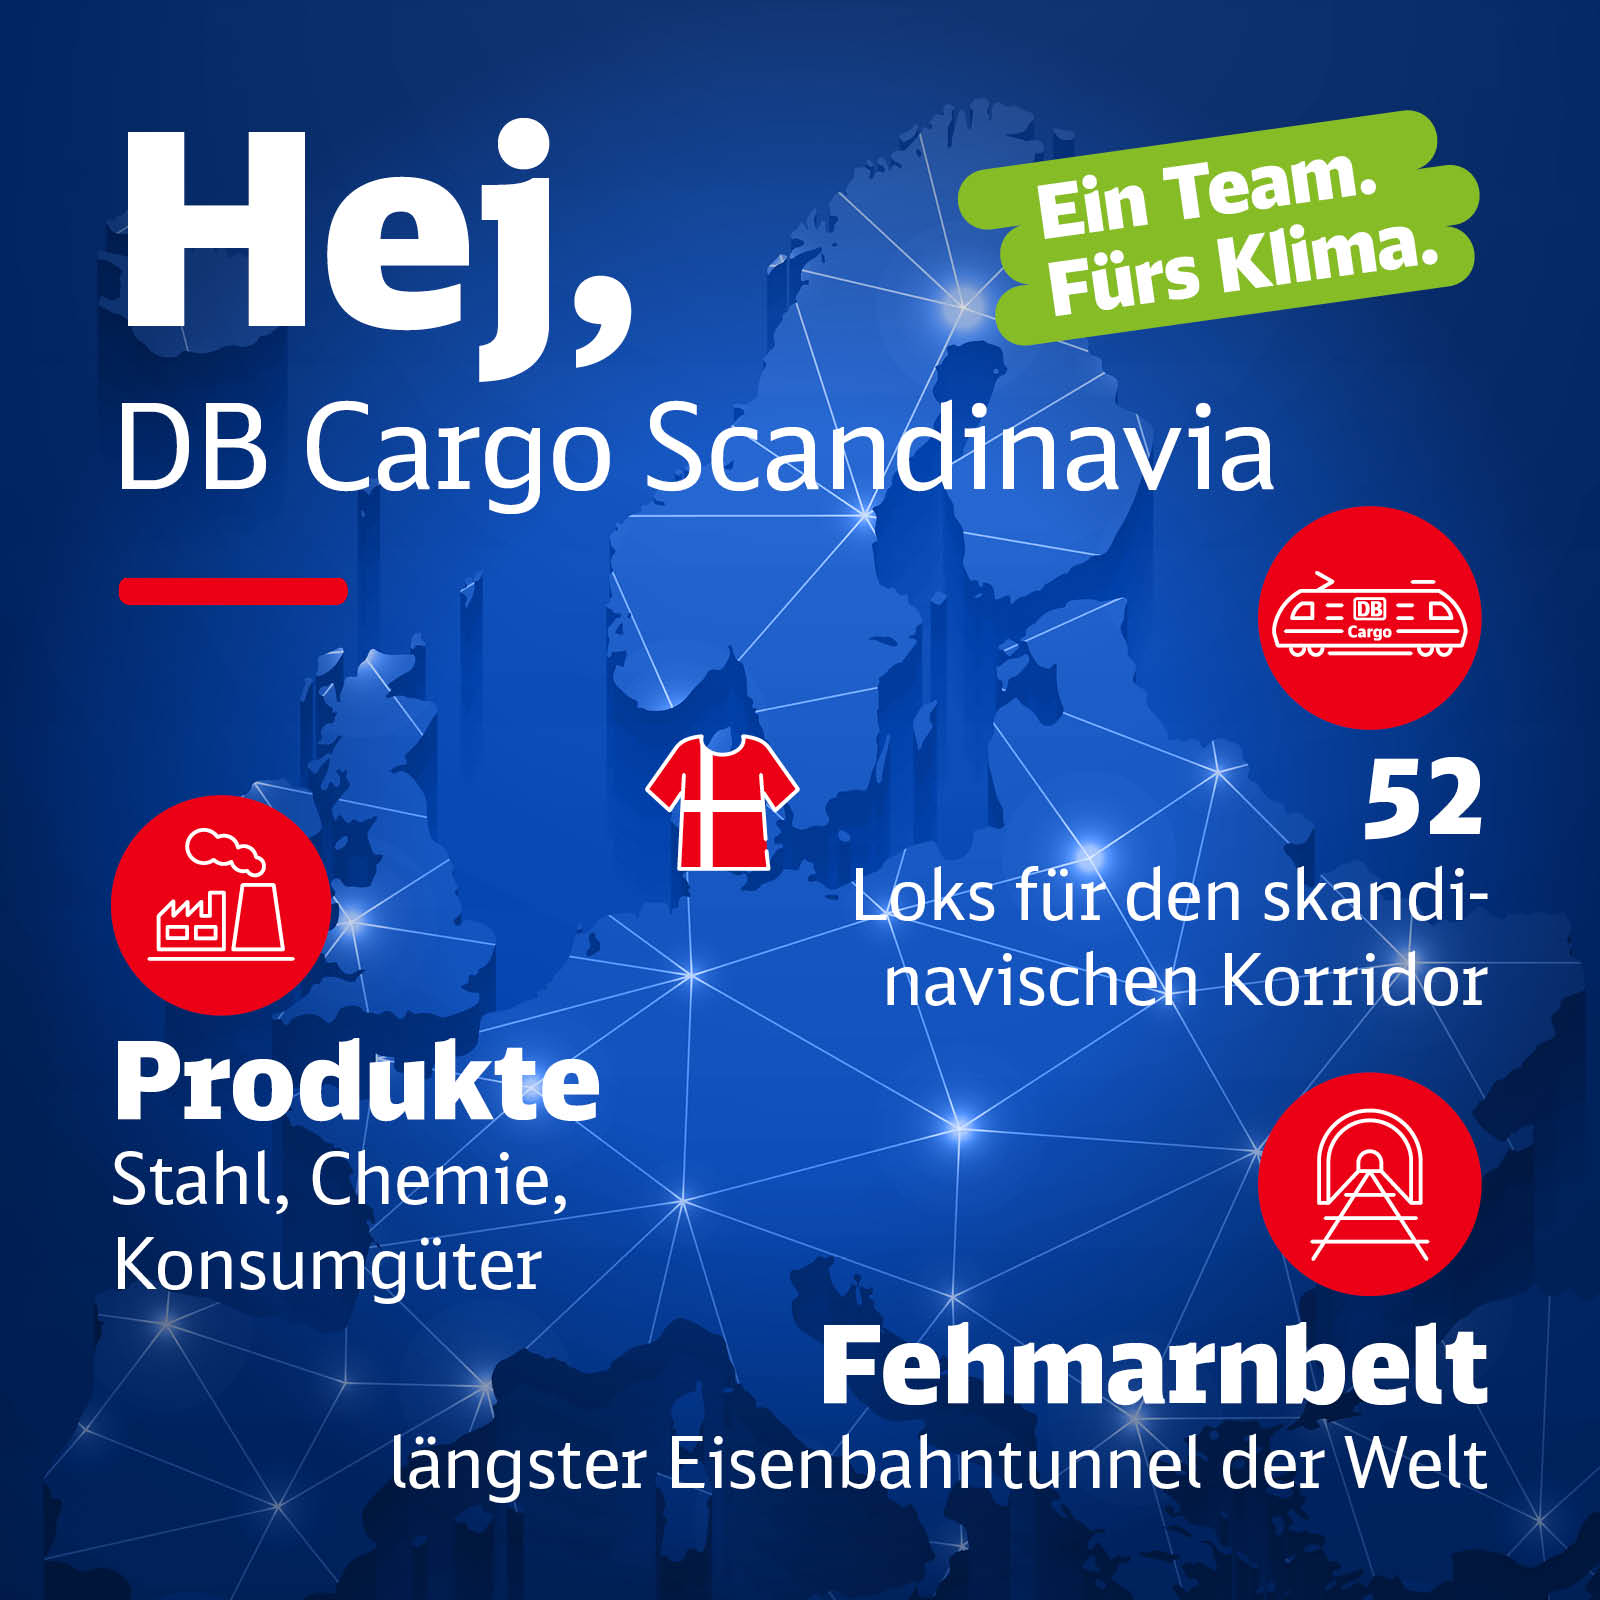 Eine Europakarte mit Infos zu DB Cargo Skandinavien.